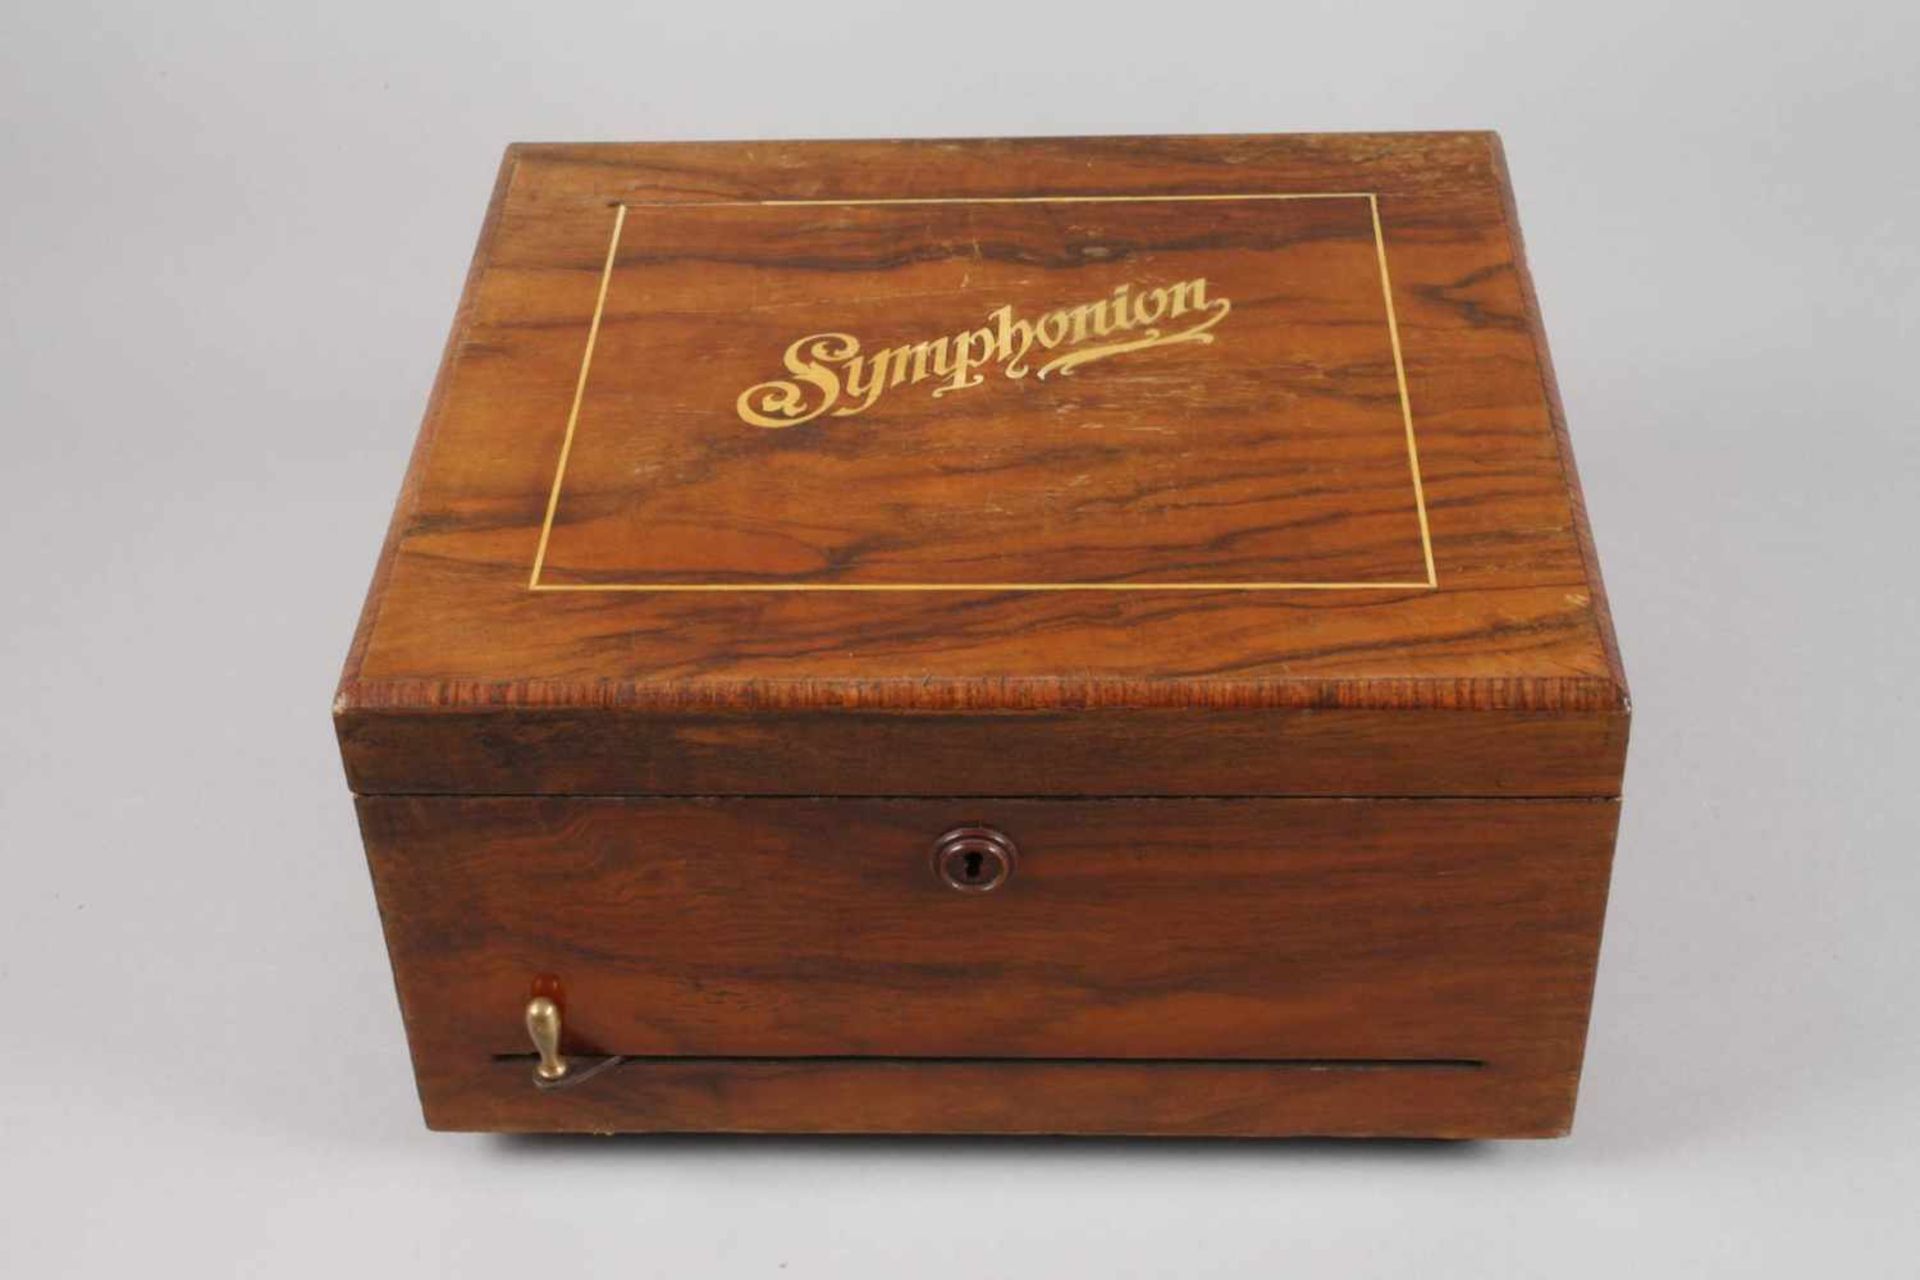 Plattenspieldose Symphonionum 1890, mehrfach gemarkt, bezeichnet Timbro Variante Nummer 9151, - Bild 3 aus 4